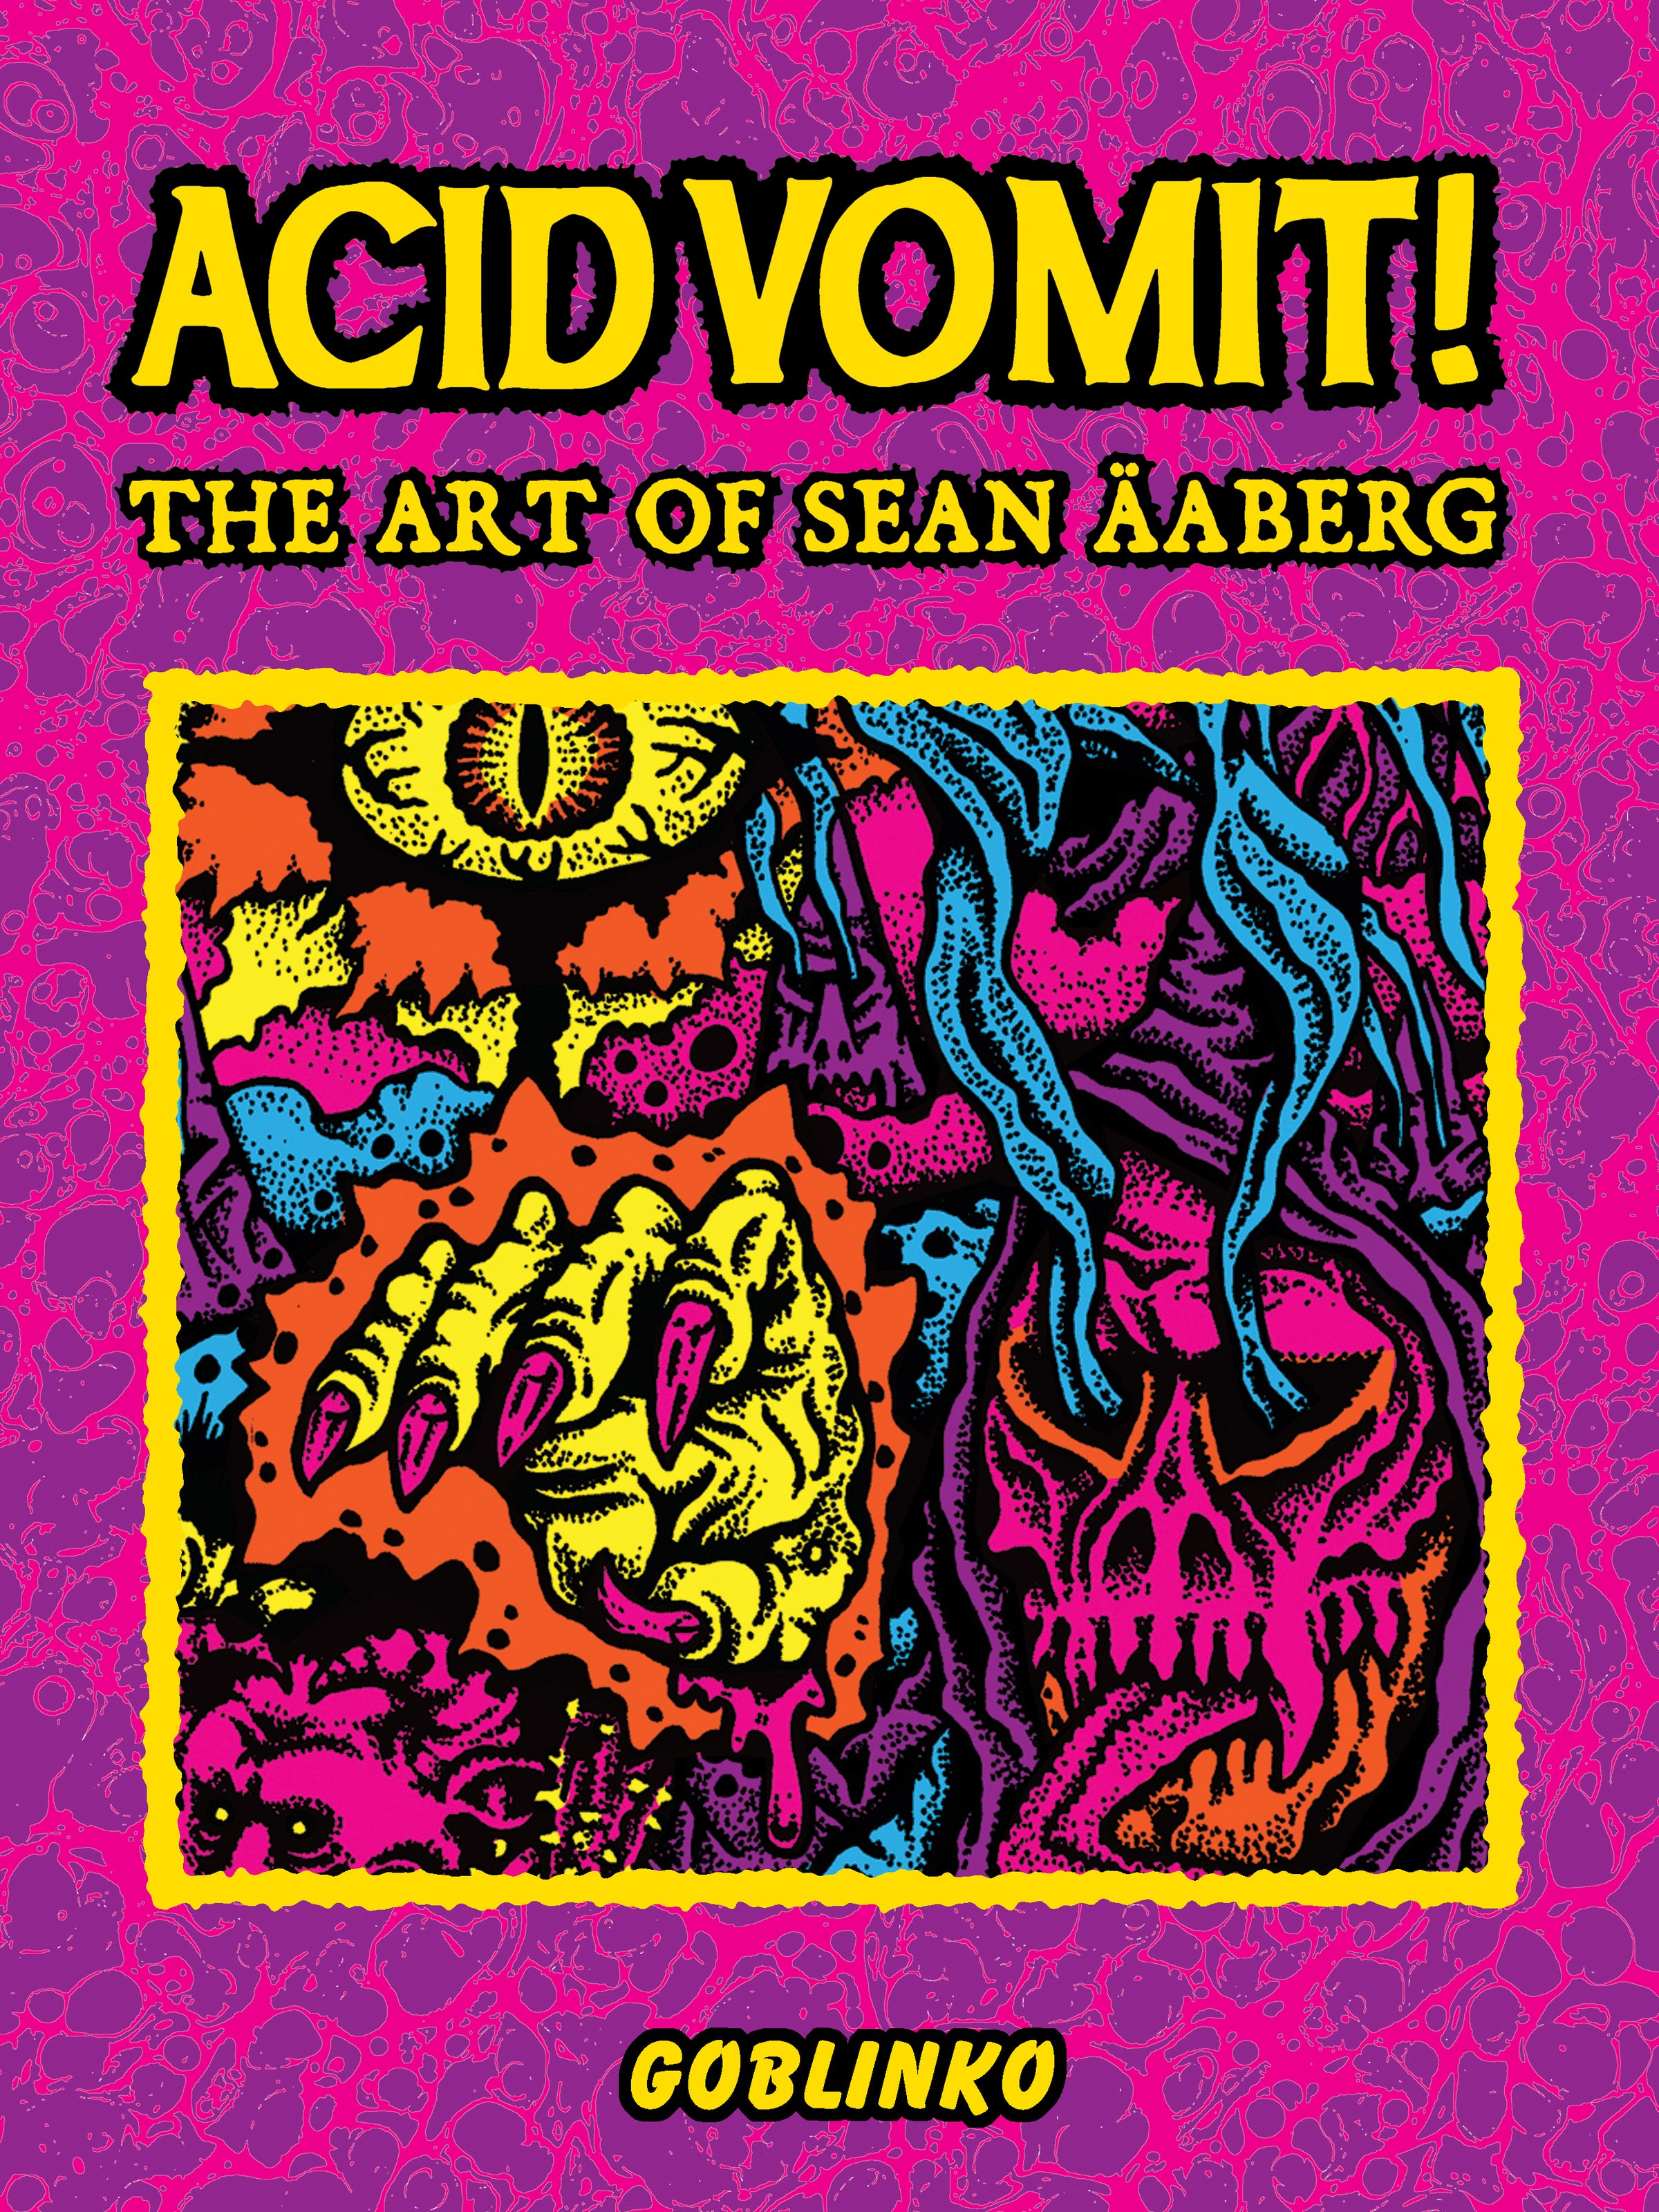 Acid Vomit! The art of Sean Äaberg